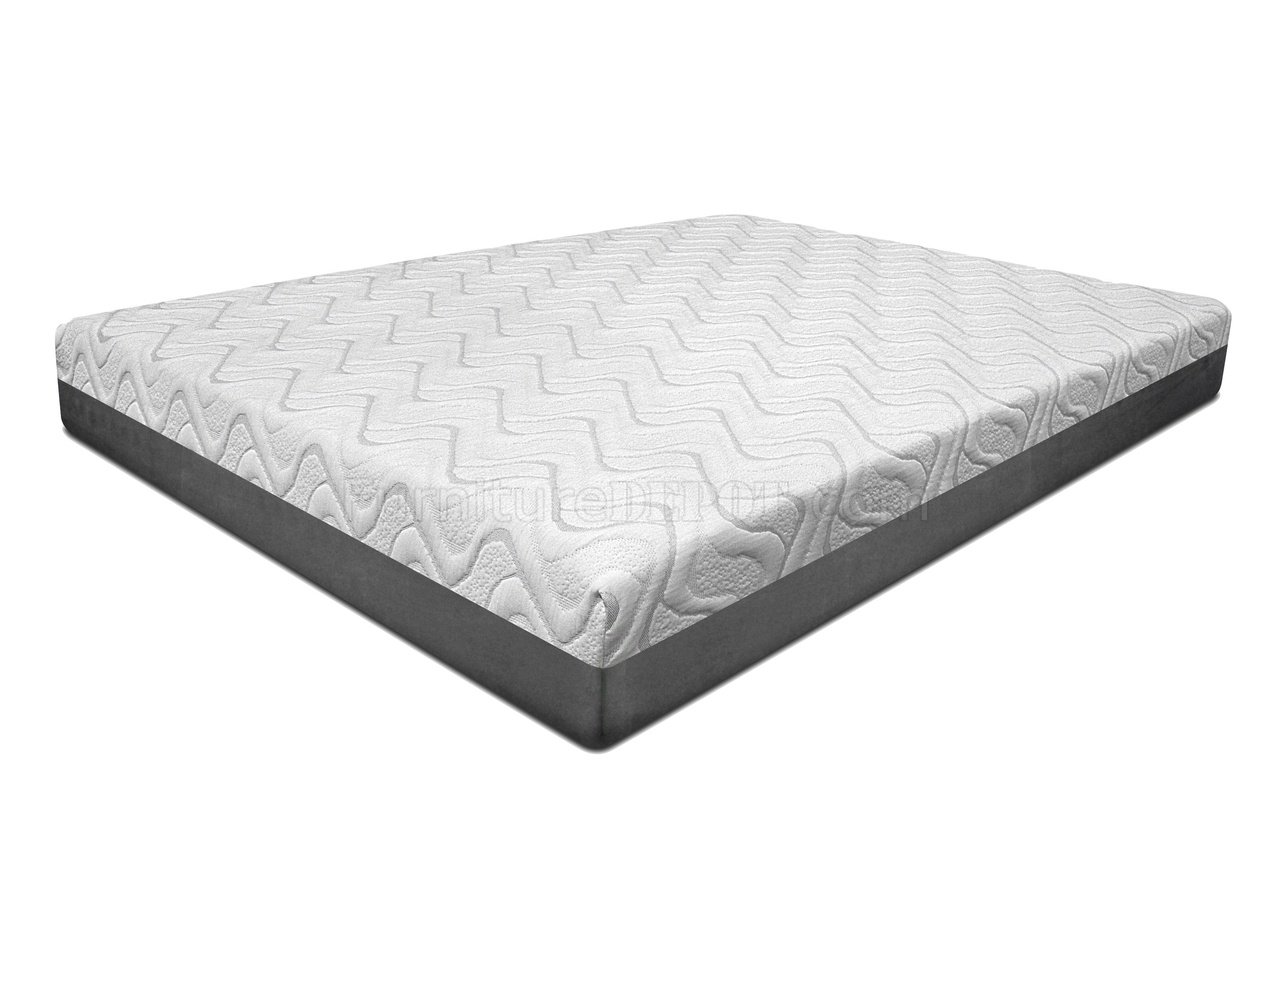 10 topaz gel memory foam mattress